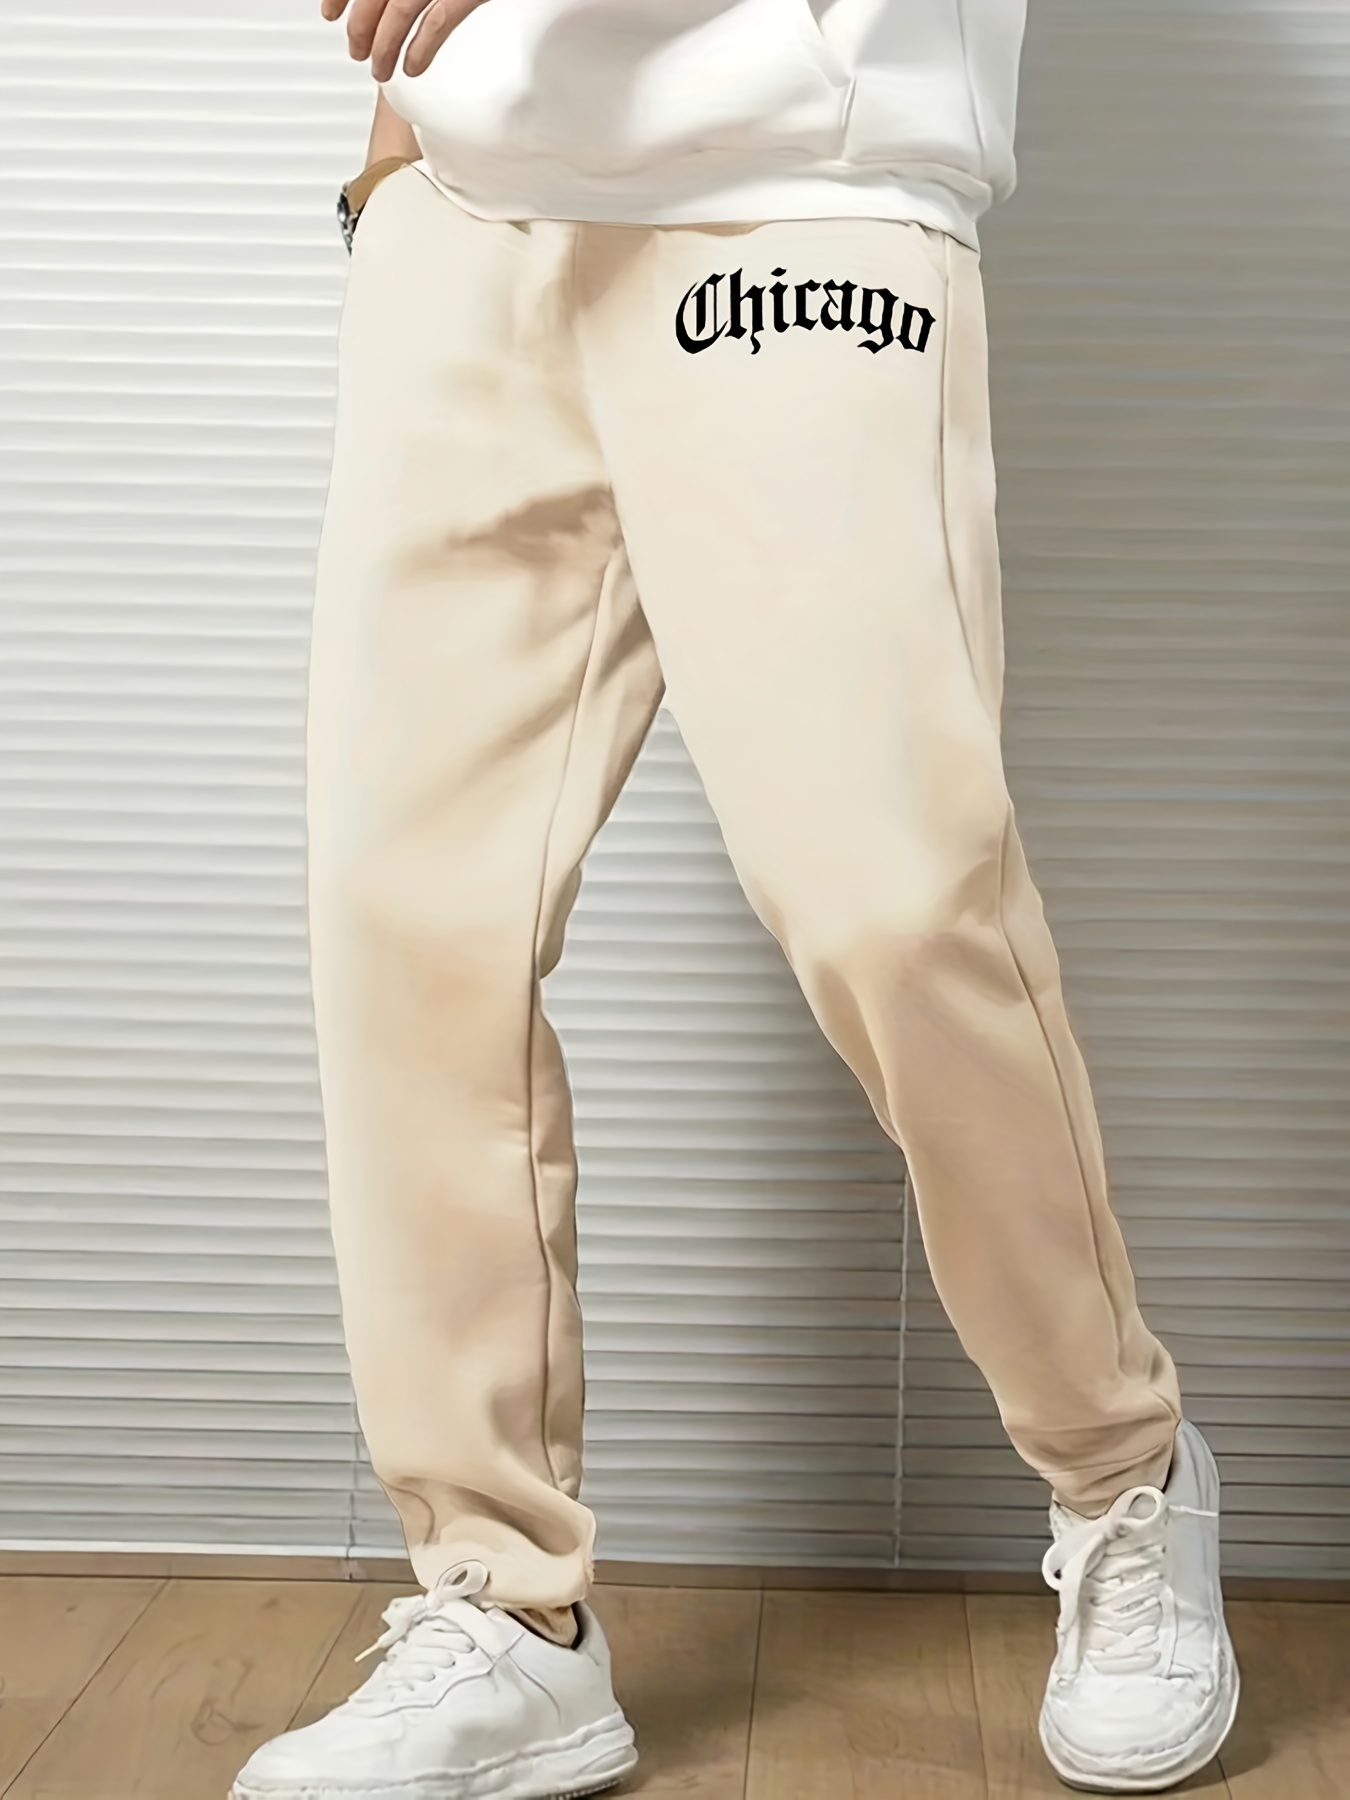 Plus Size Men's Joggers Lemon Print Sweatpants For Sports - Temu